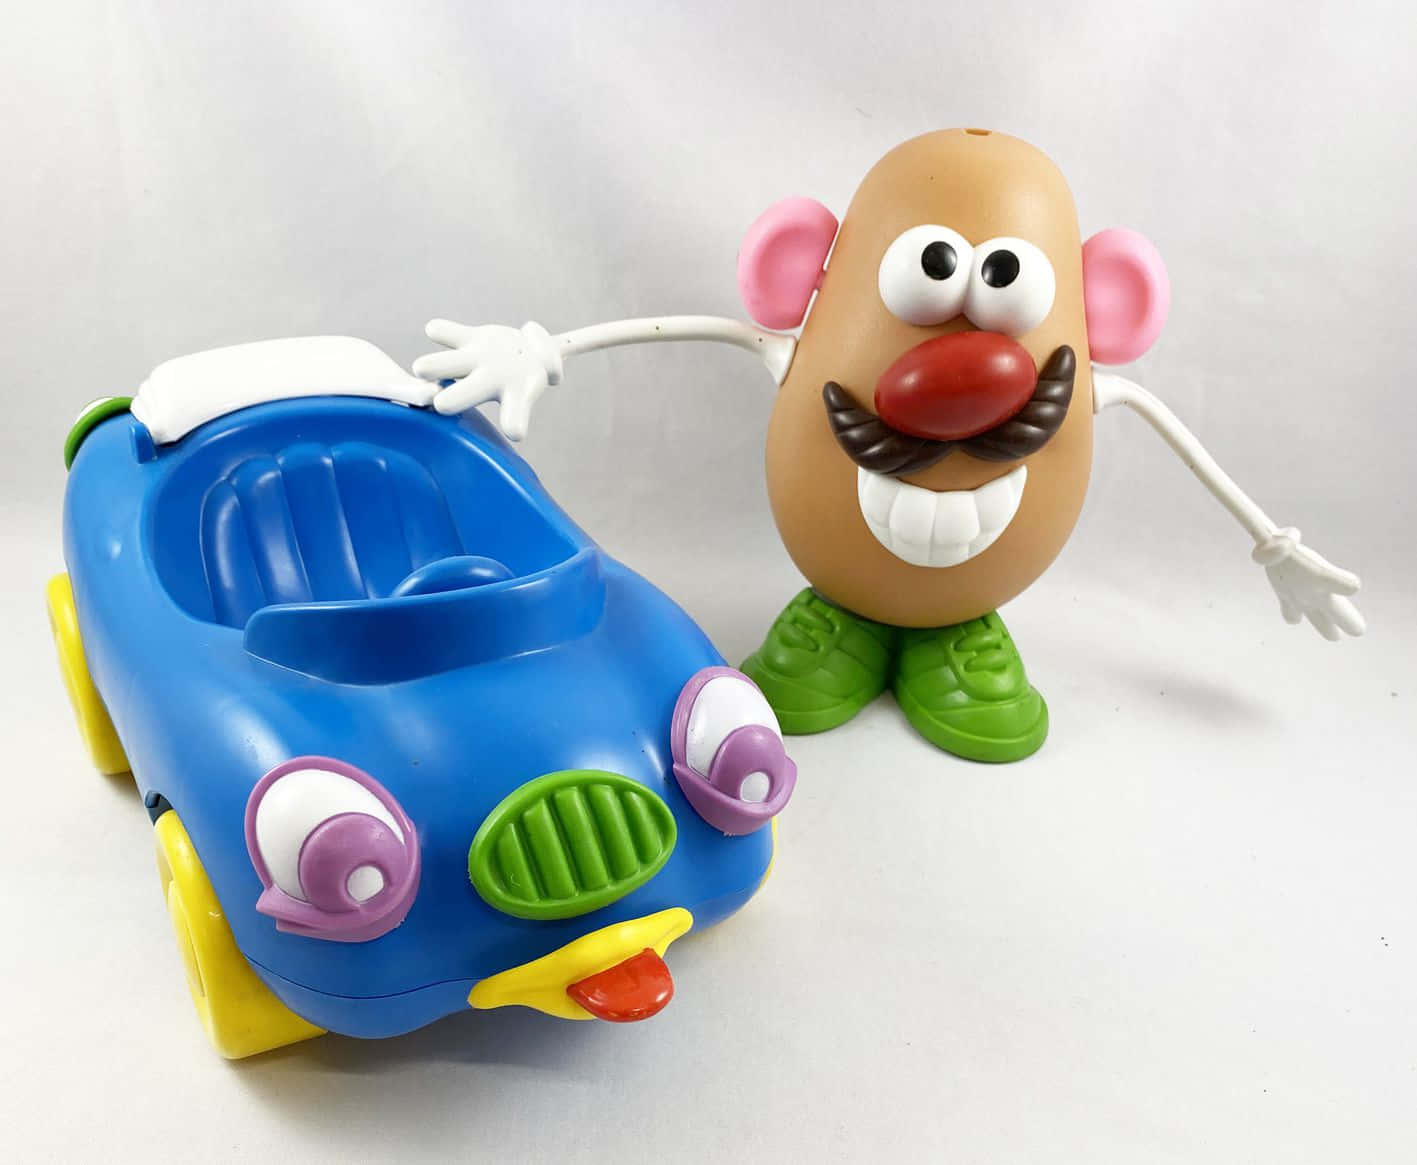 Ilsignor Potato Head È Una Figura Iconica Nella Serie Di Toy Story.